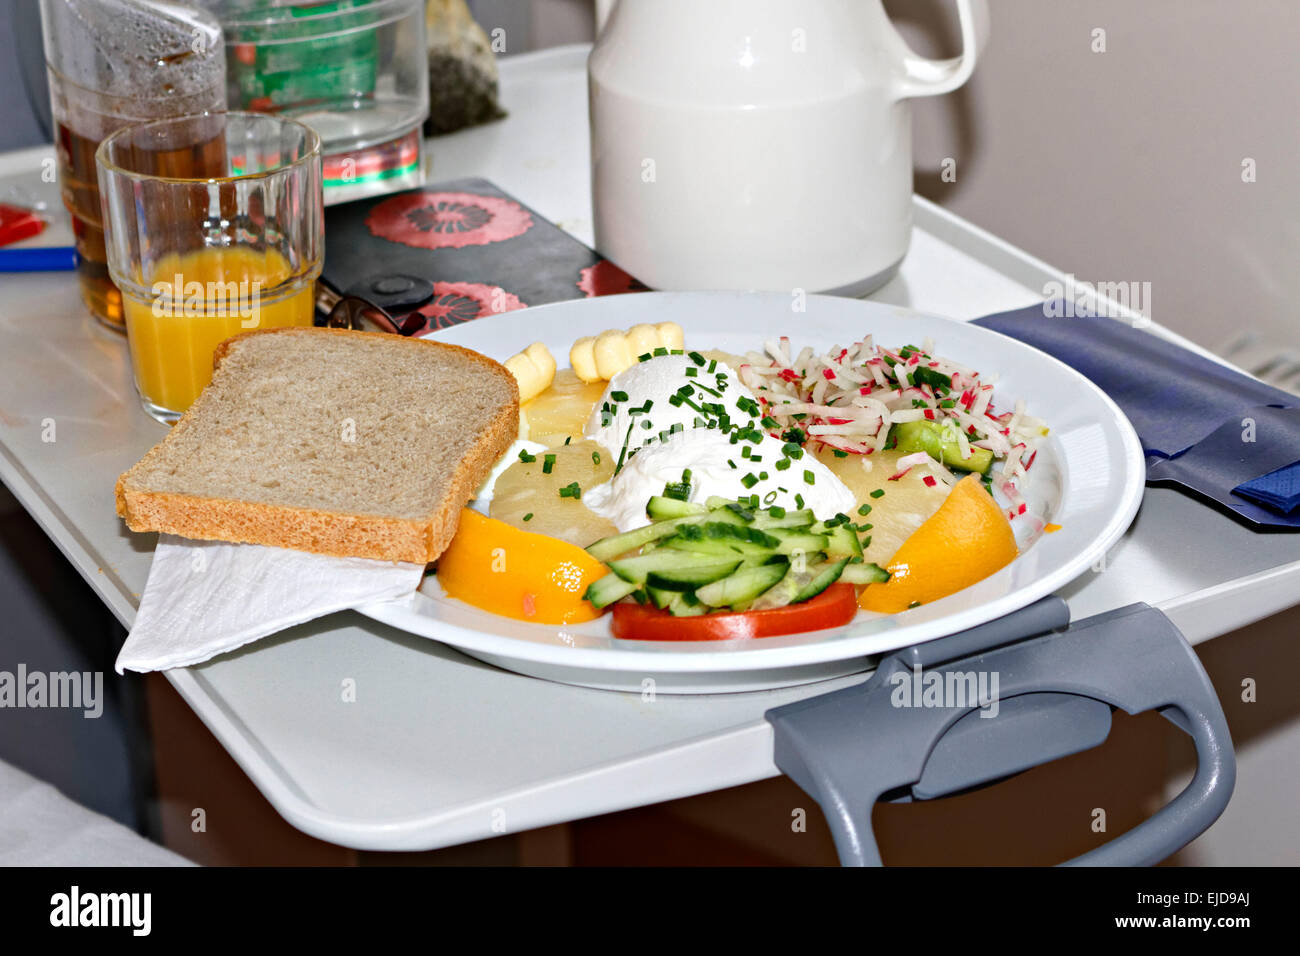 Fachklinik am Krankenbett Speisen auf einem Tablett-Tisch, Deutschland  Stockfotografie - Alamy